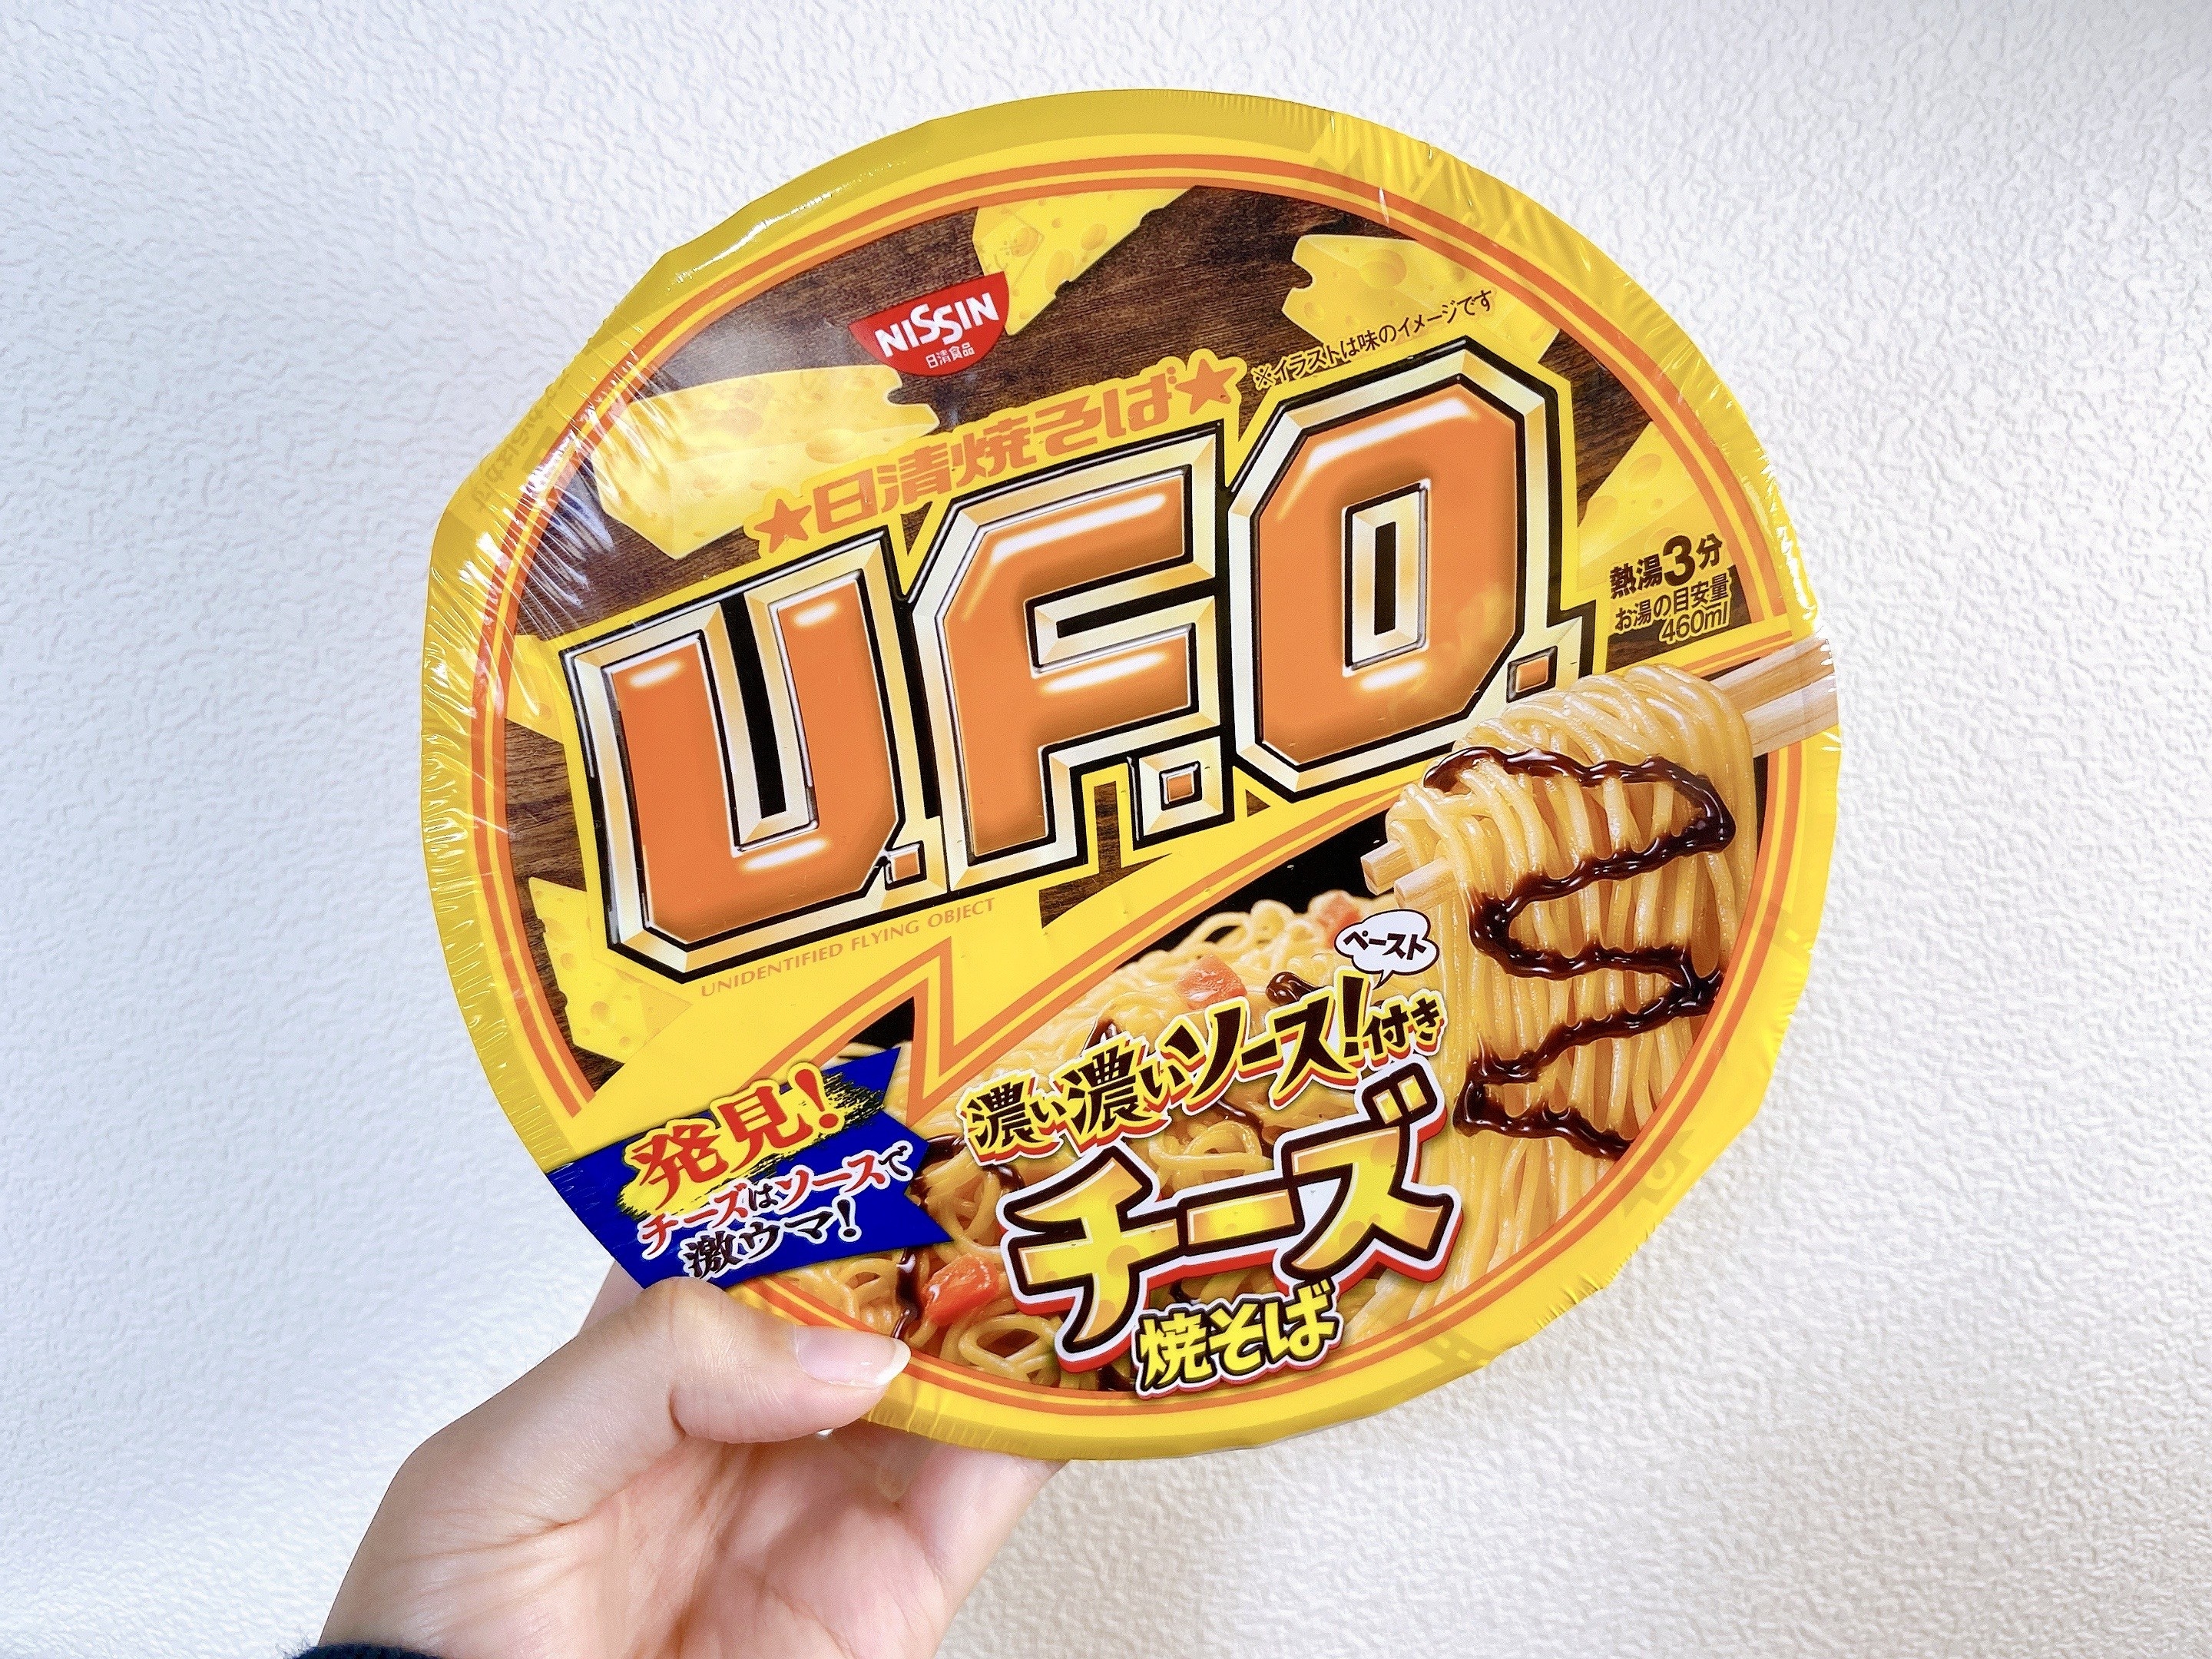 すごい Ufo チーズ焼きそば